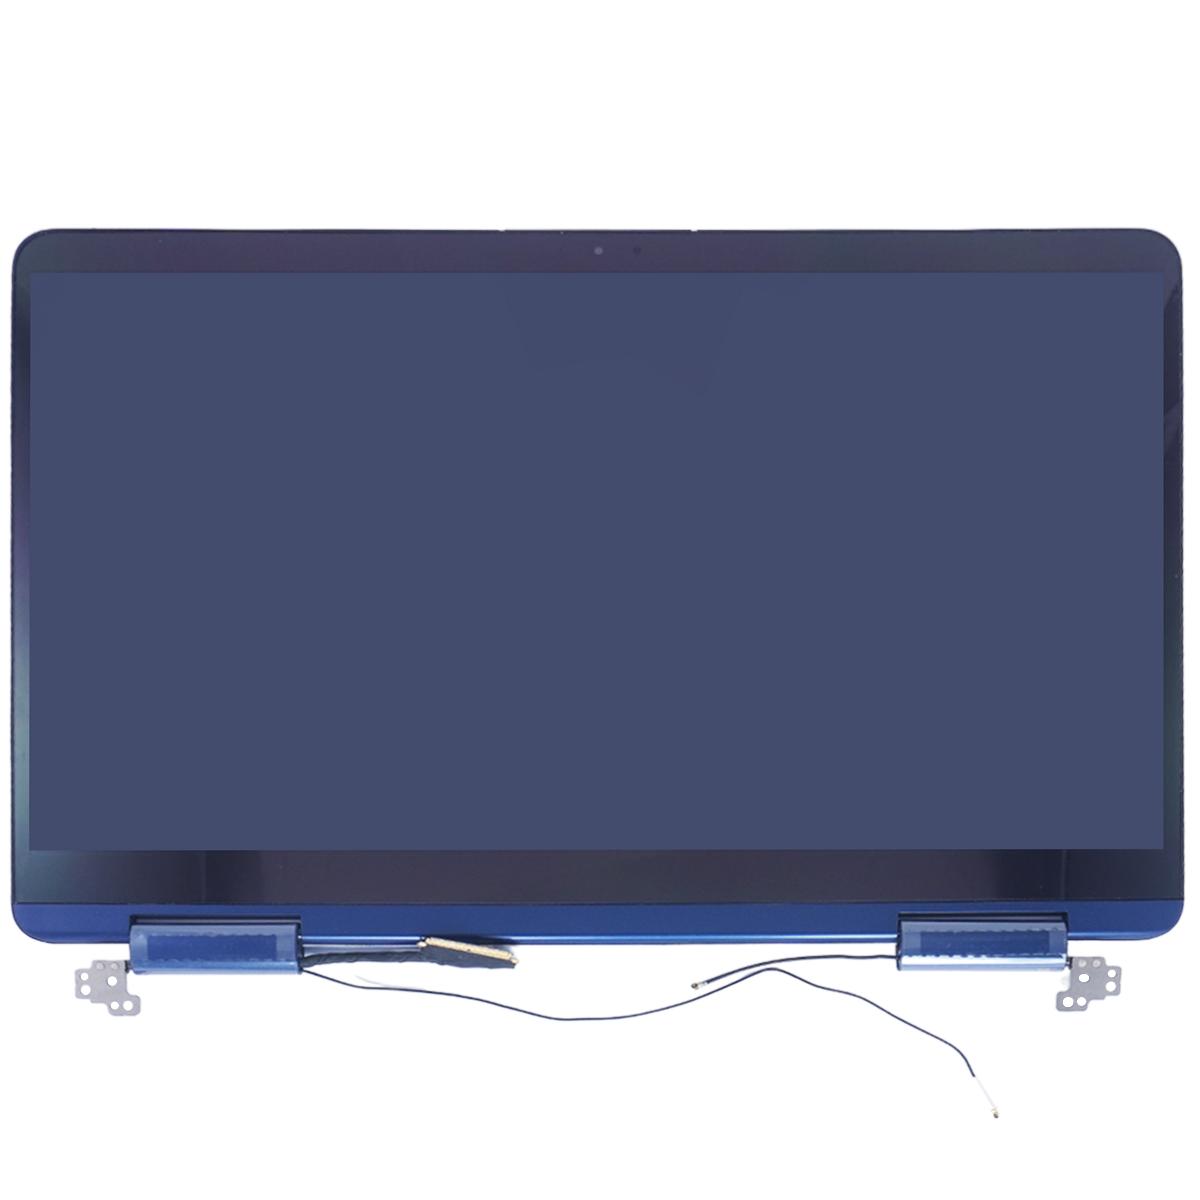 Οθόνη Laptop - Screen monitor για Samsung Notebook 9 Pen NP930SBE NP930SBE-K02 NP930SBE-K01CN NP930SBE-K01CH NP930SBE-K01US NT930SBE BA96-07263A Full Assembly 13.3 1920x1080 FHD LED Glossy Ocean Blue ( Κωδ.1-SCR0421 )